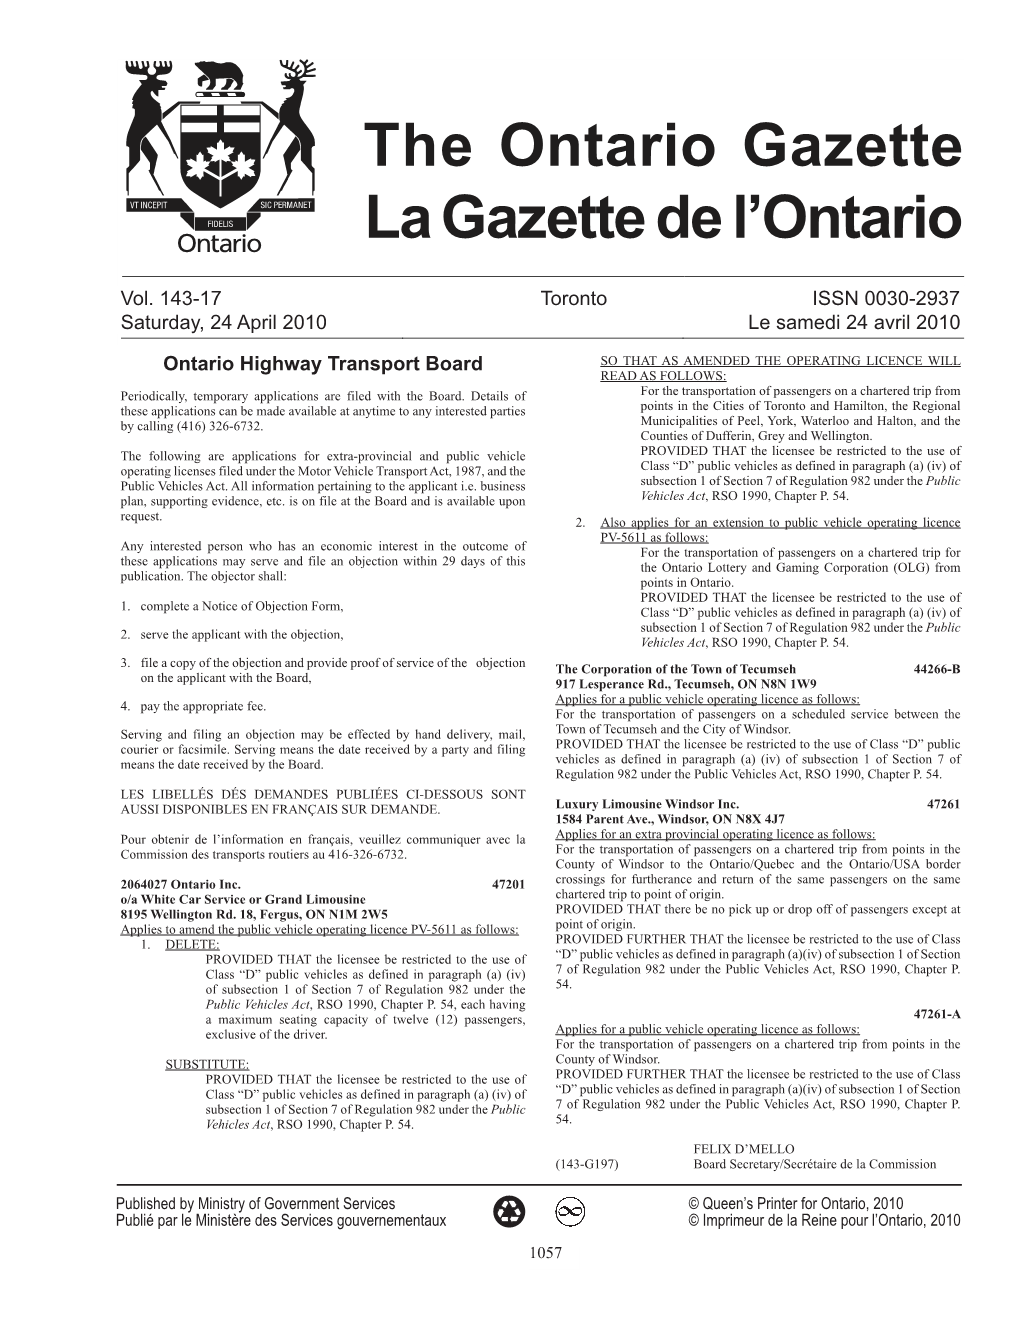 Ontario Gazette Volume 143 Issue 17, La Gazette De L'ontario Volume 143